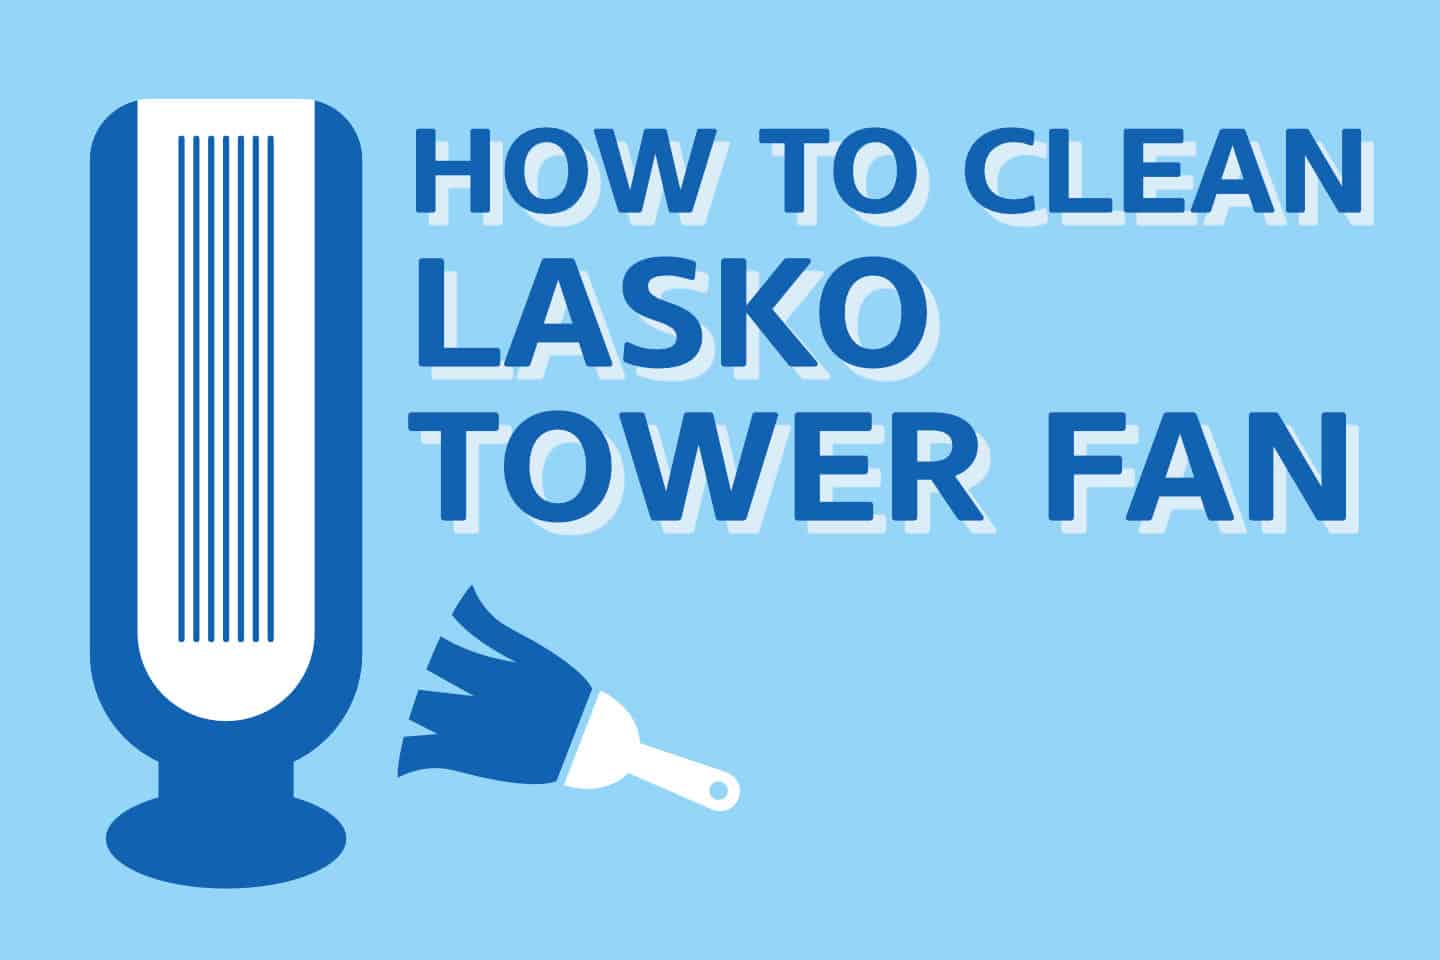 How To Clean Lasko Tower Fan [PROPER WAY]